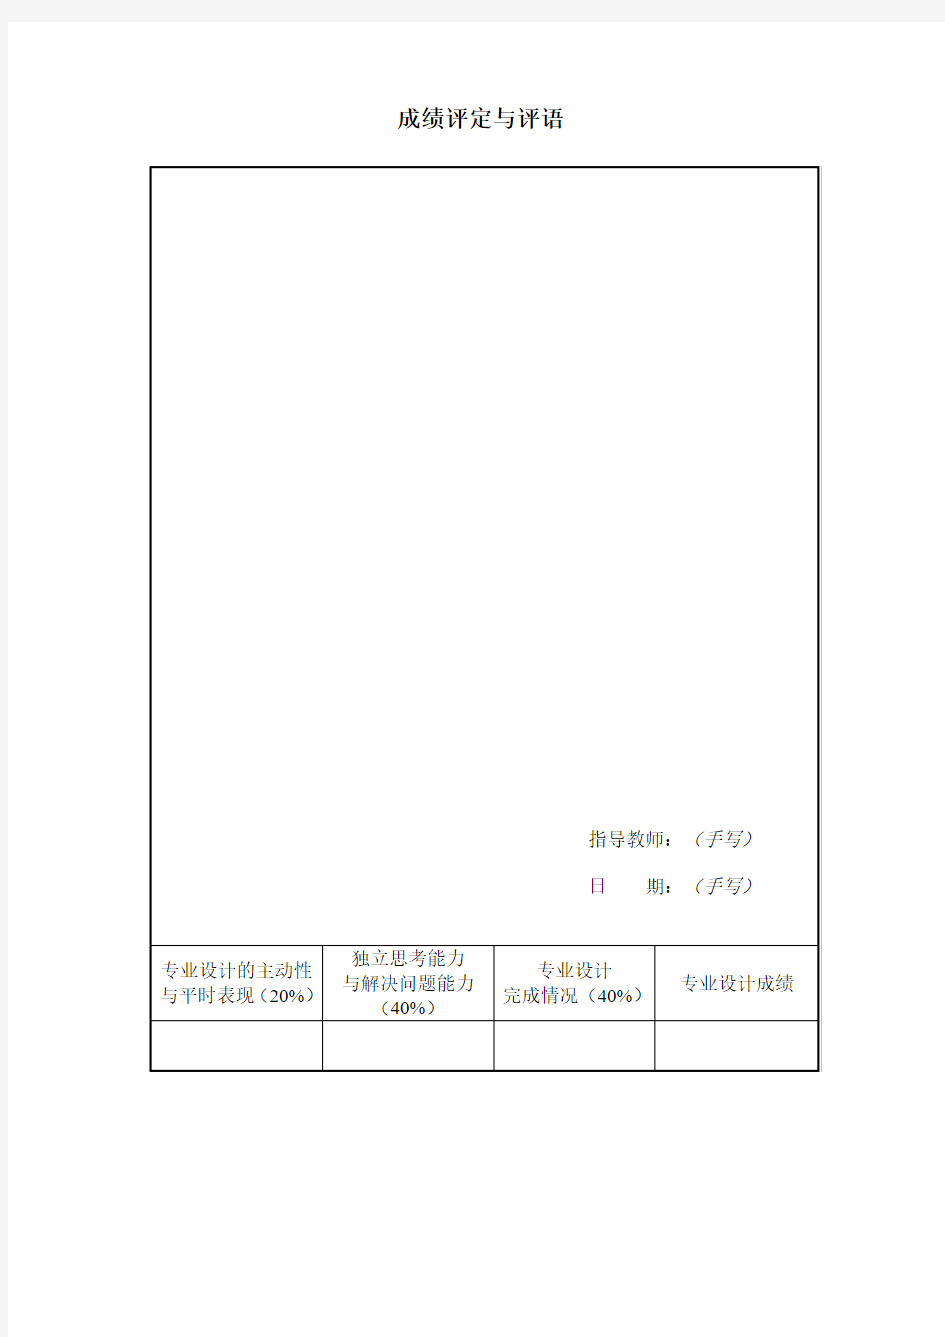 11级专业设计报告格式 (1)